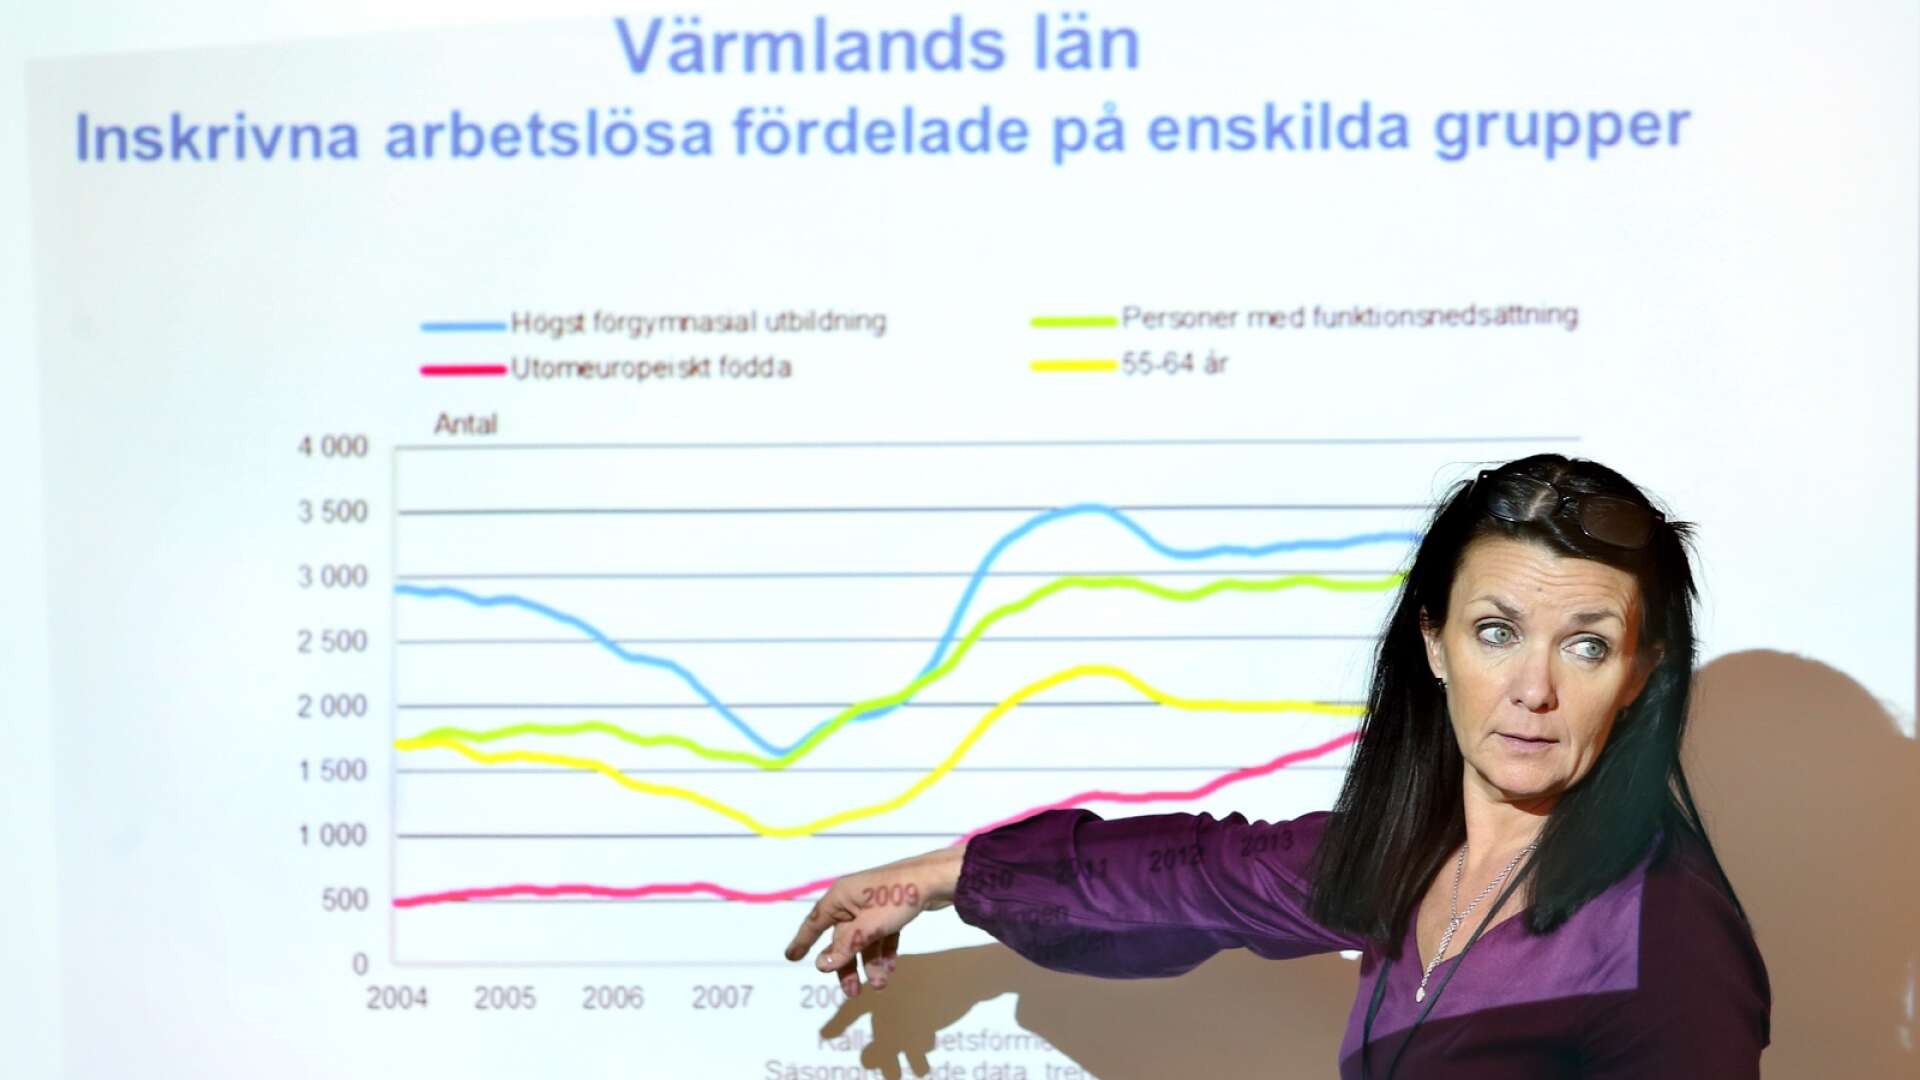 Lena Hertzberg, enhetschef på Arbetsförmedlingen i Värmland, berättar att arbetslösheten är på väg ner i Värmland. Även under lågkonjunkturen klarade sig länet bra jämfört med många andra delar av landet.